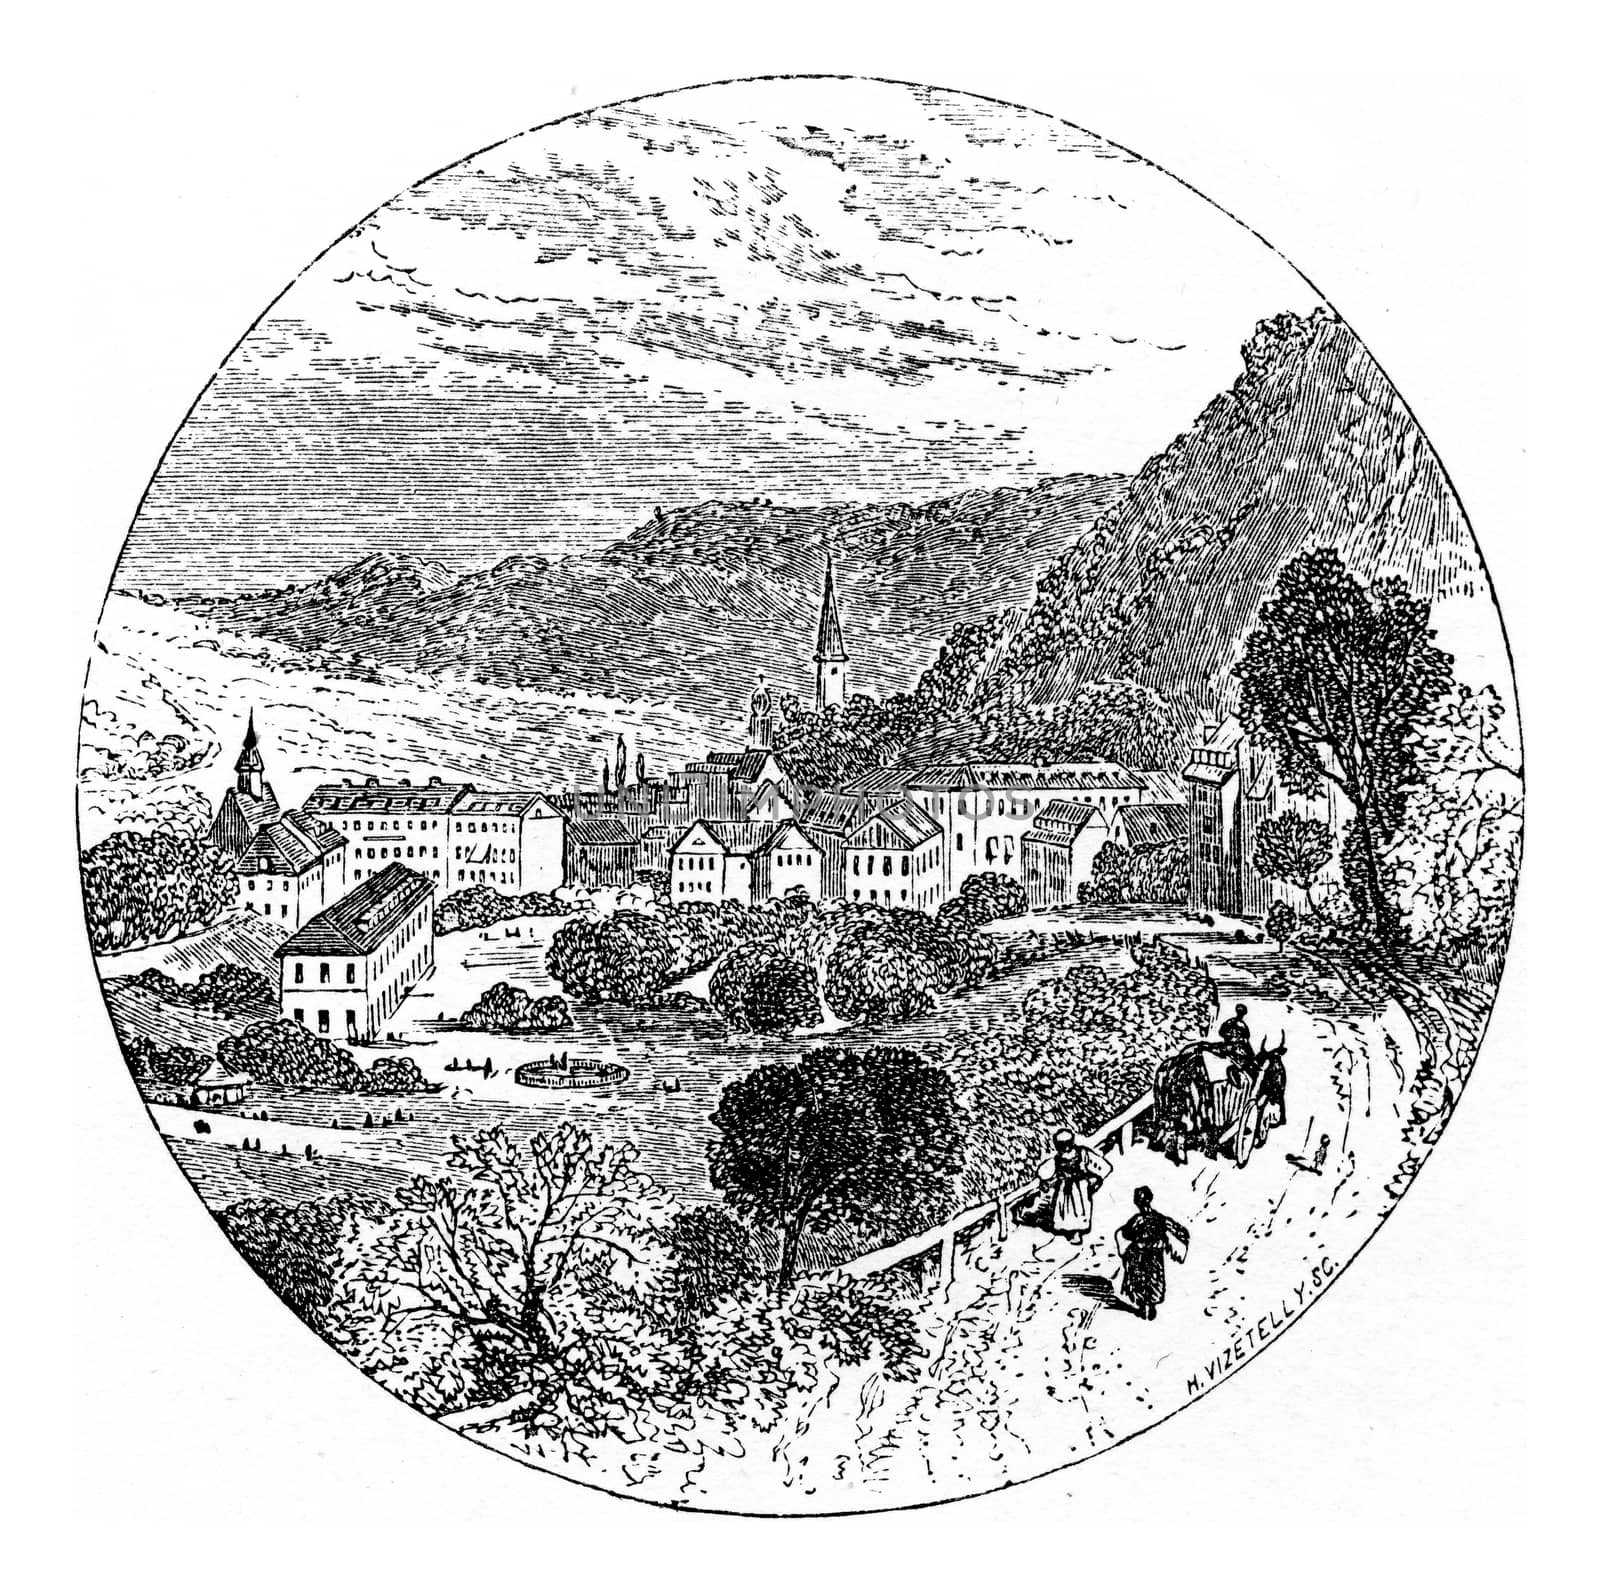 Langen, vintage engraved illustration. From Chemin des Ecoliers, 1861.
